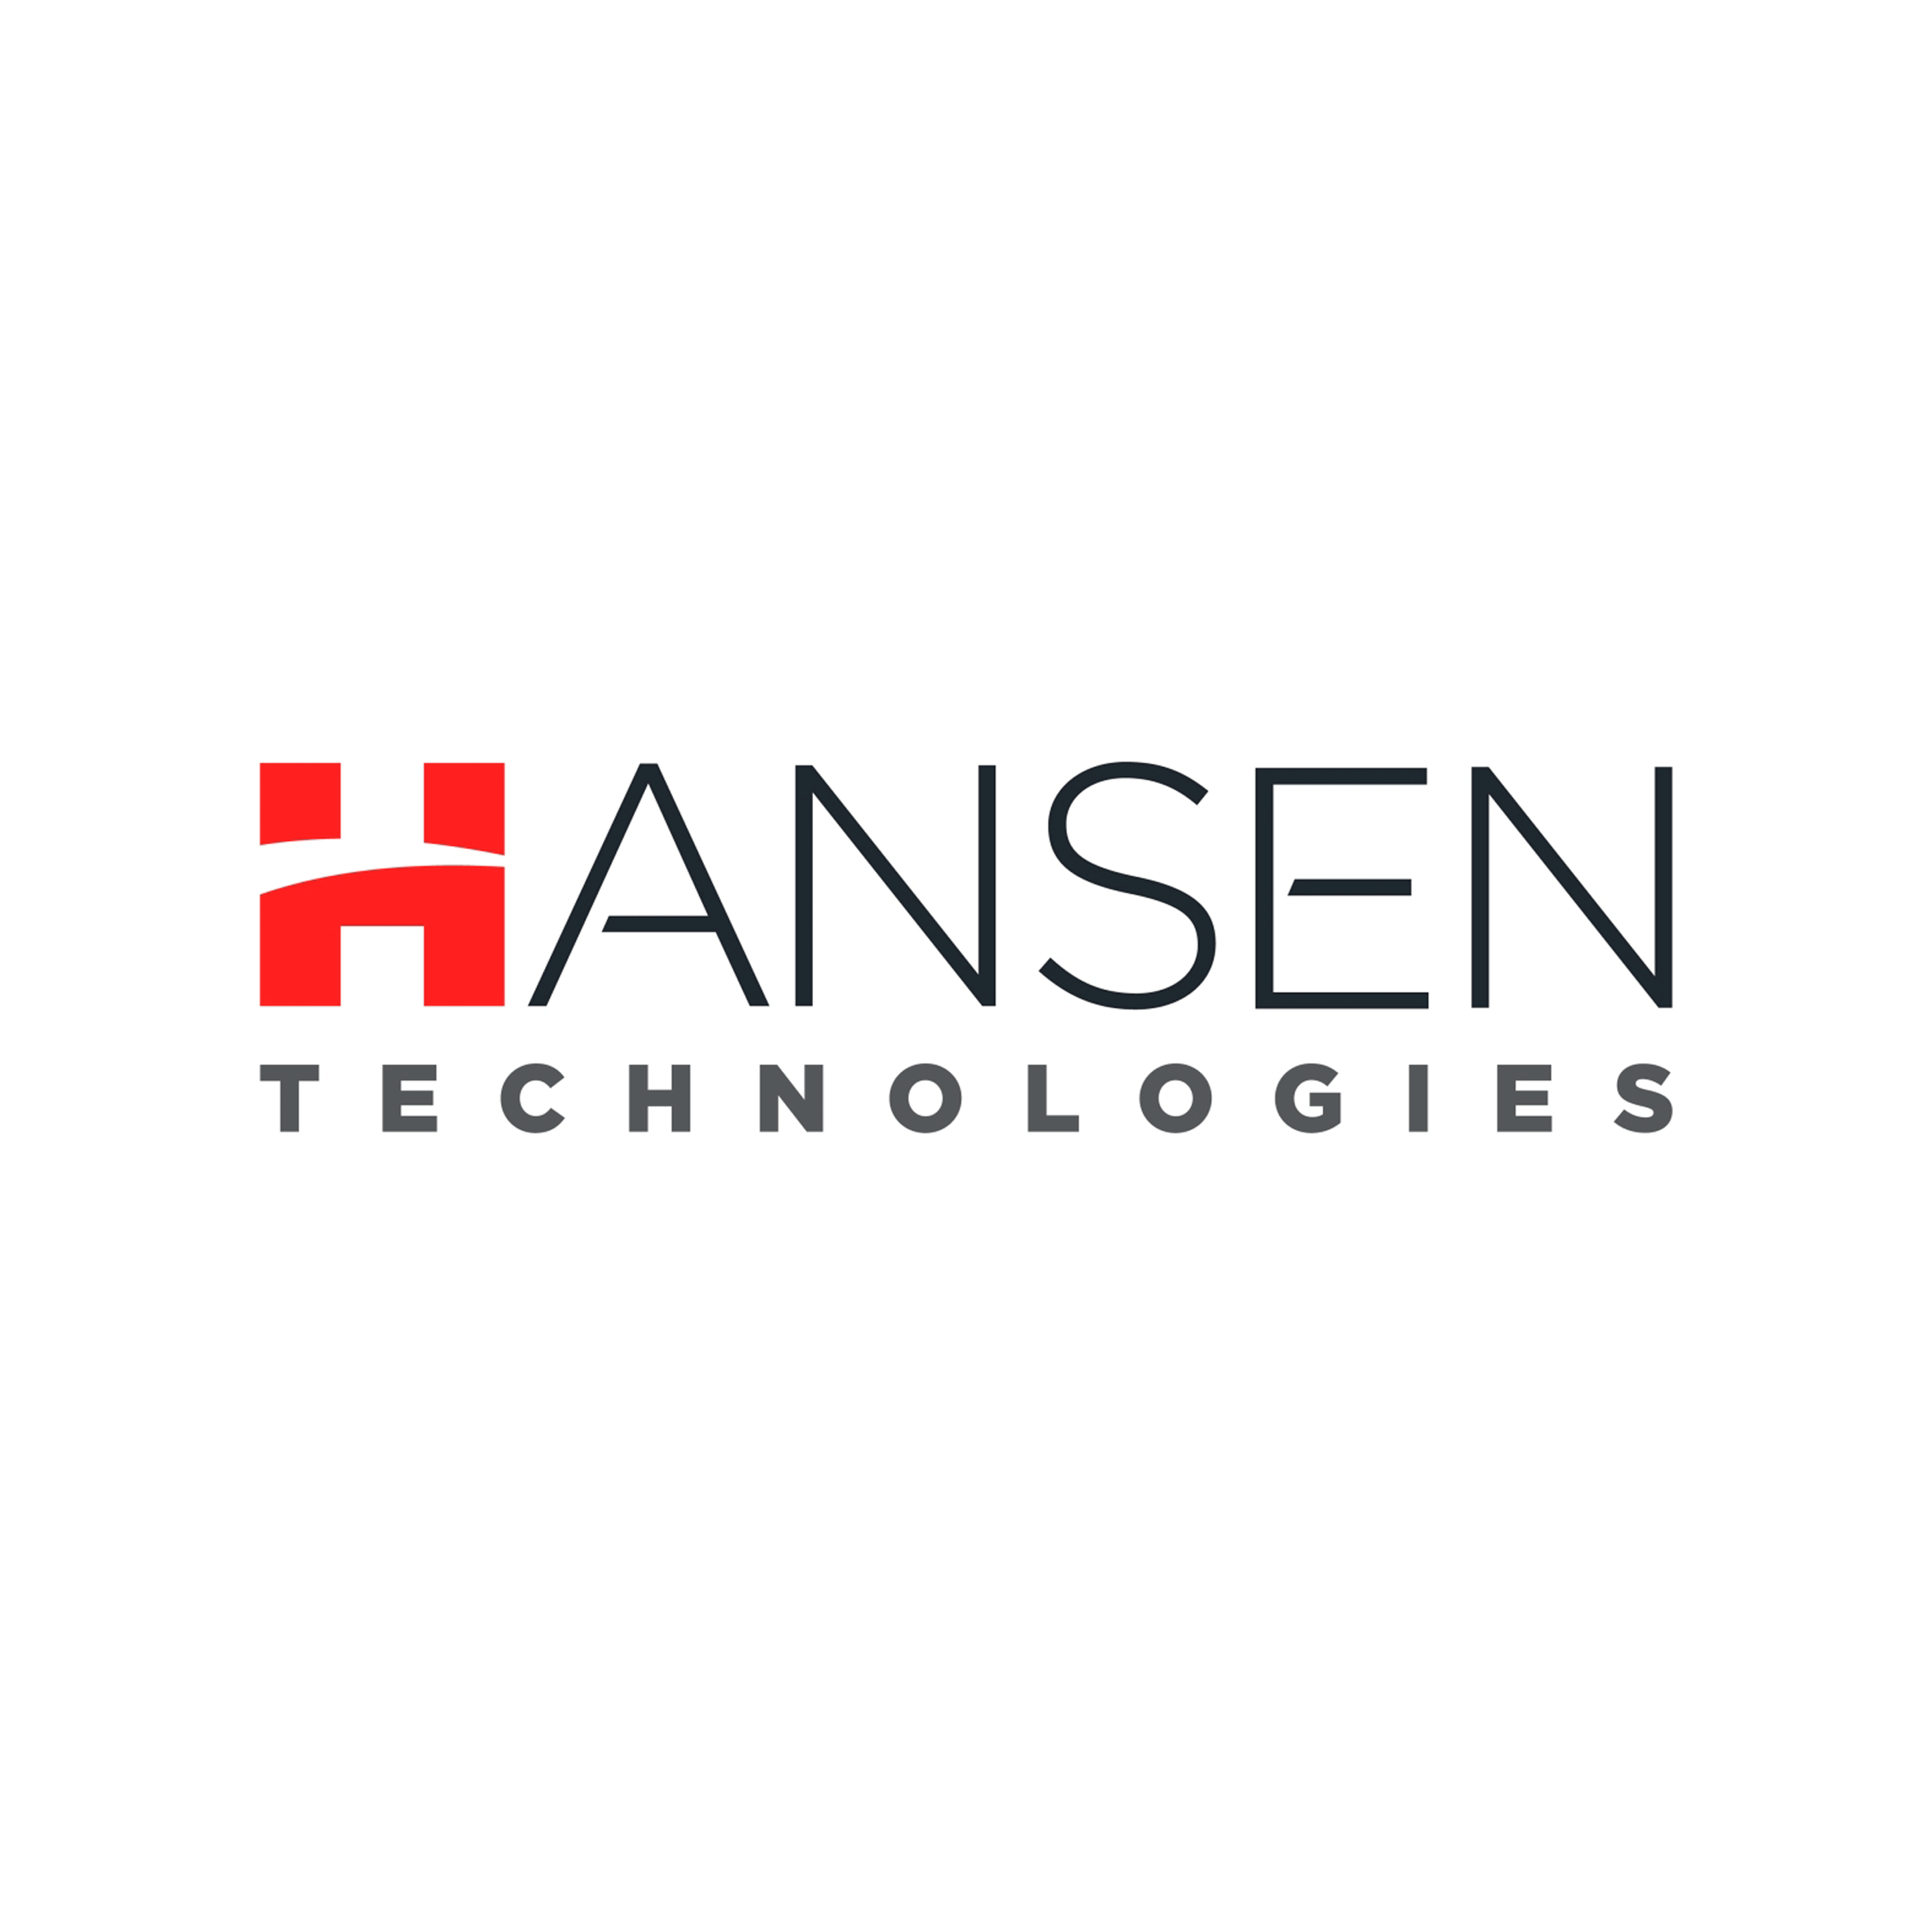 Hansesn Technology